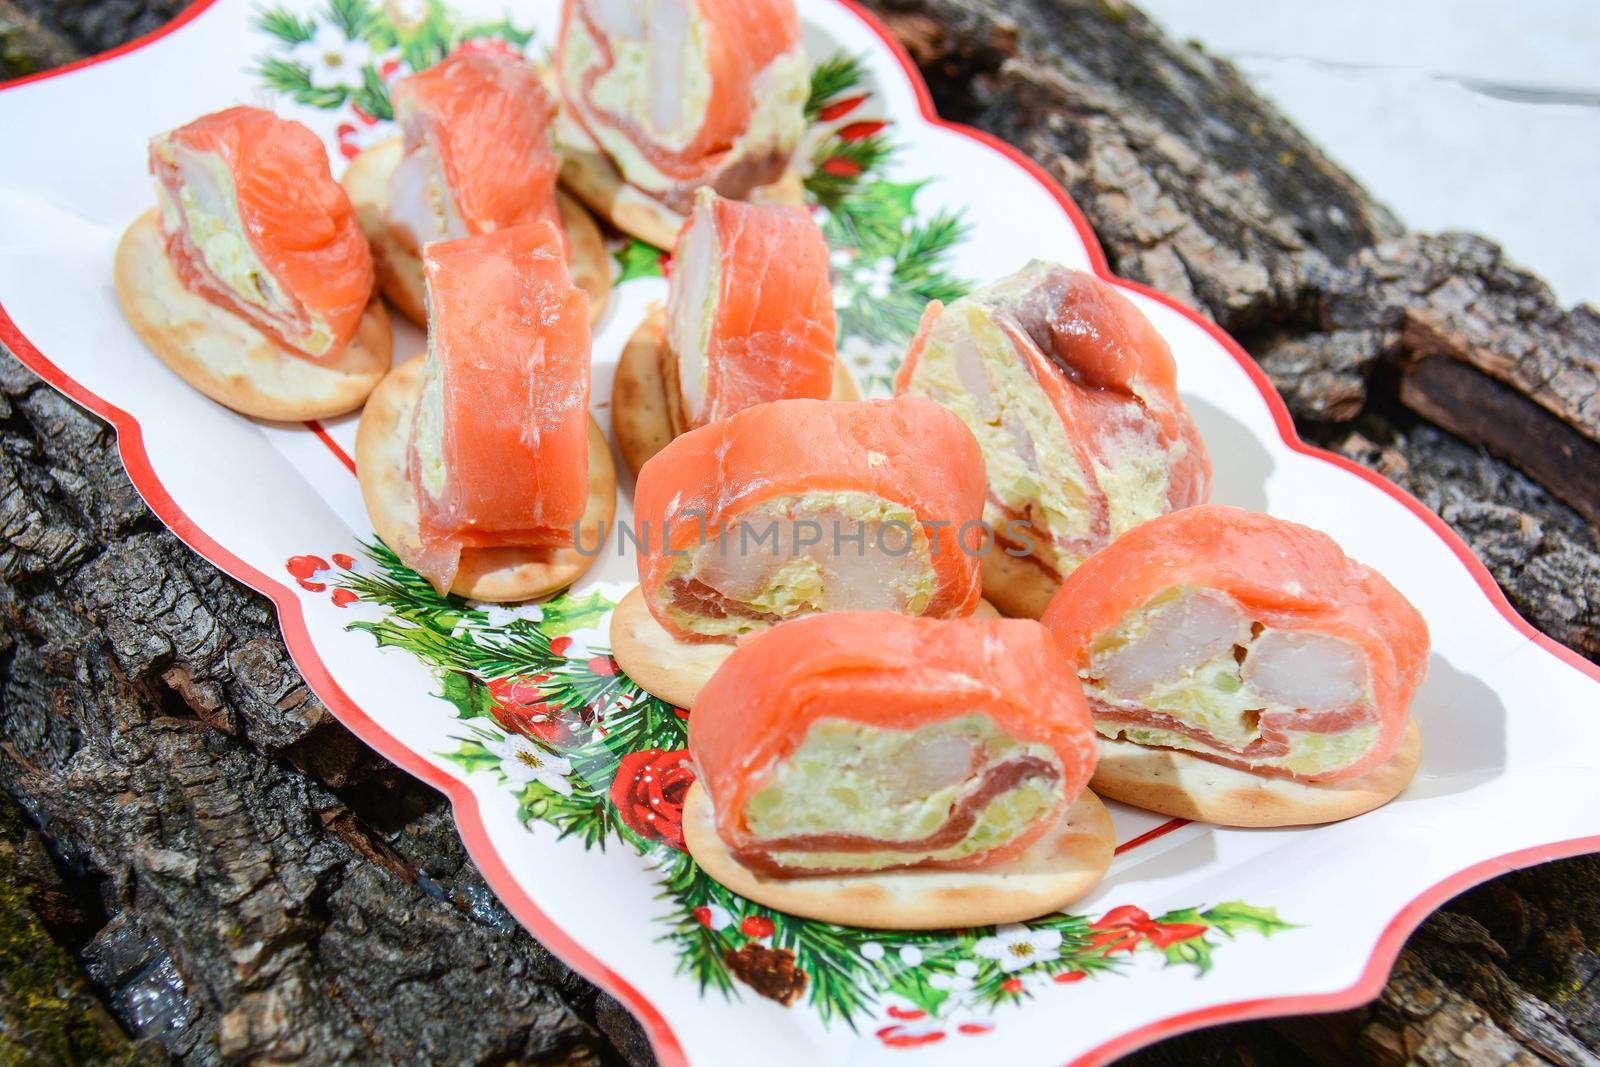 appetizer original italian fine cuisine with salmon